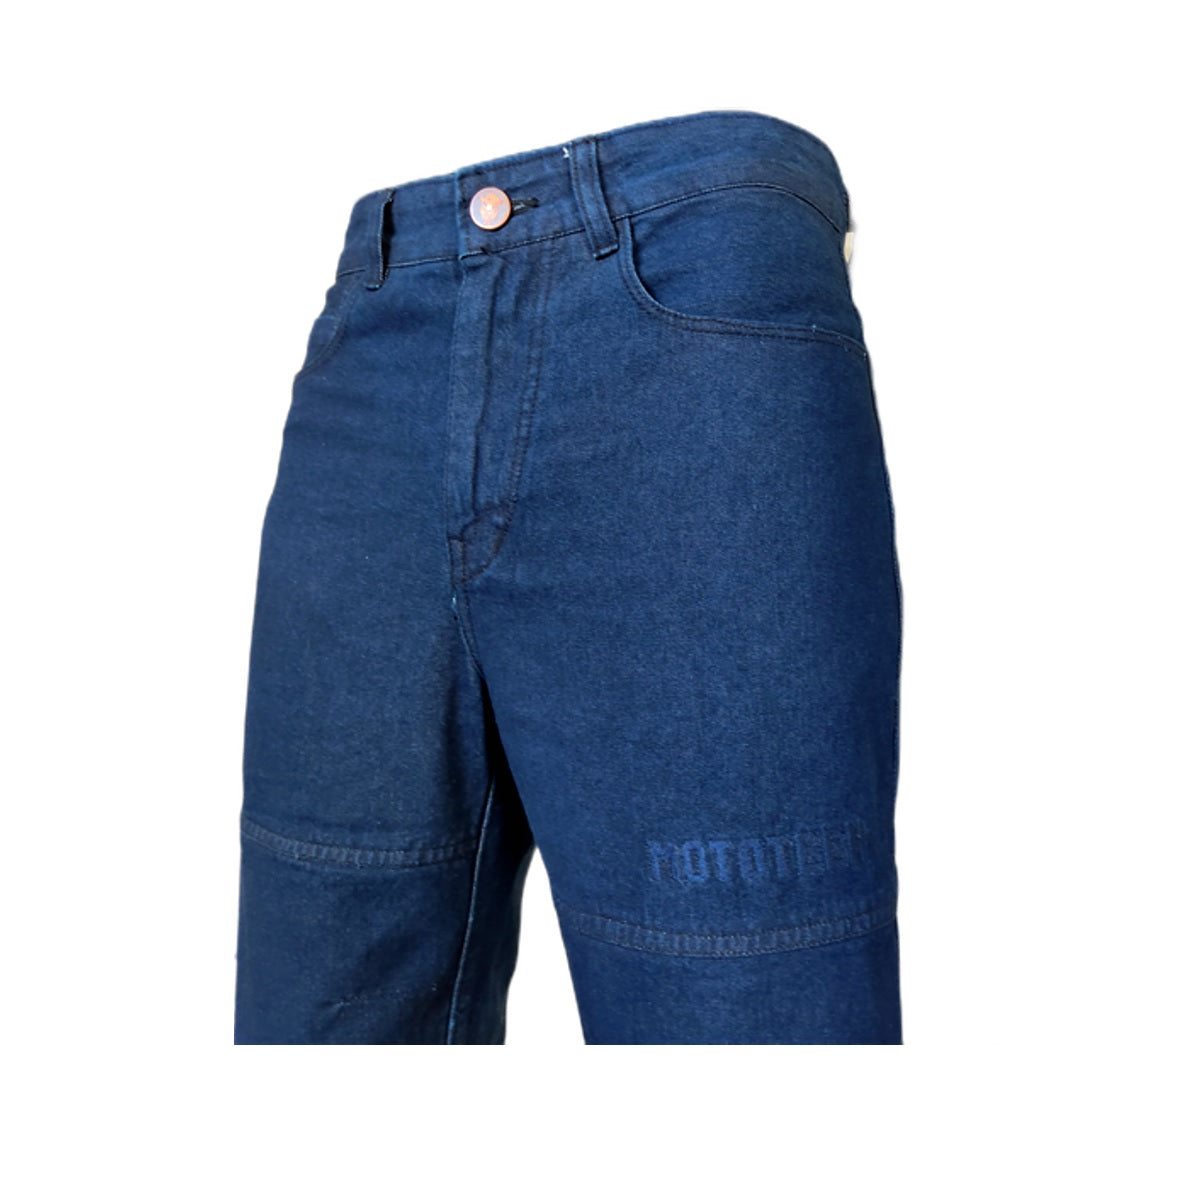 Regular Fit Plain Gents Denim Jeans Pants Blue